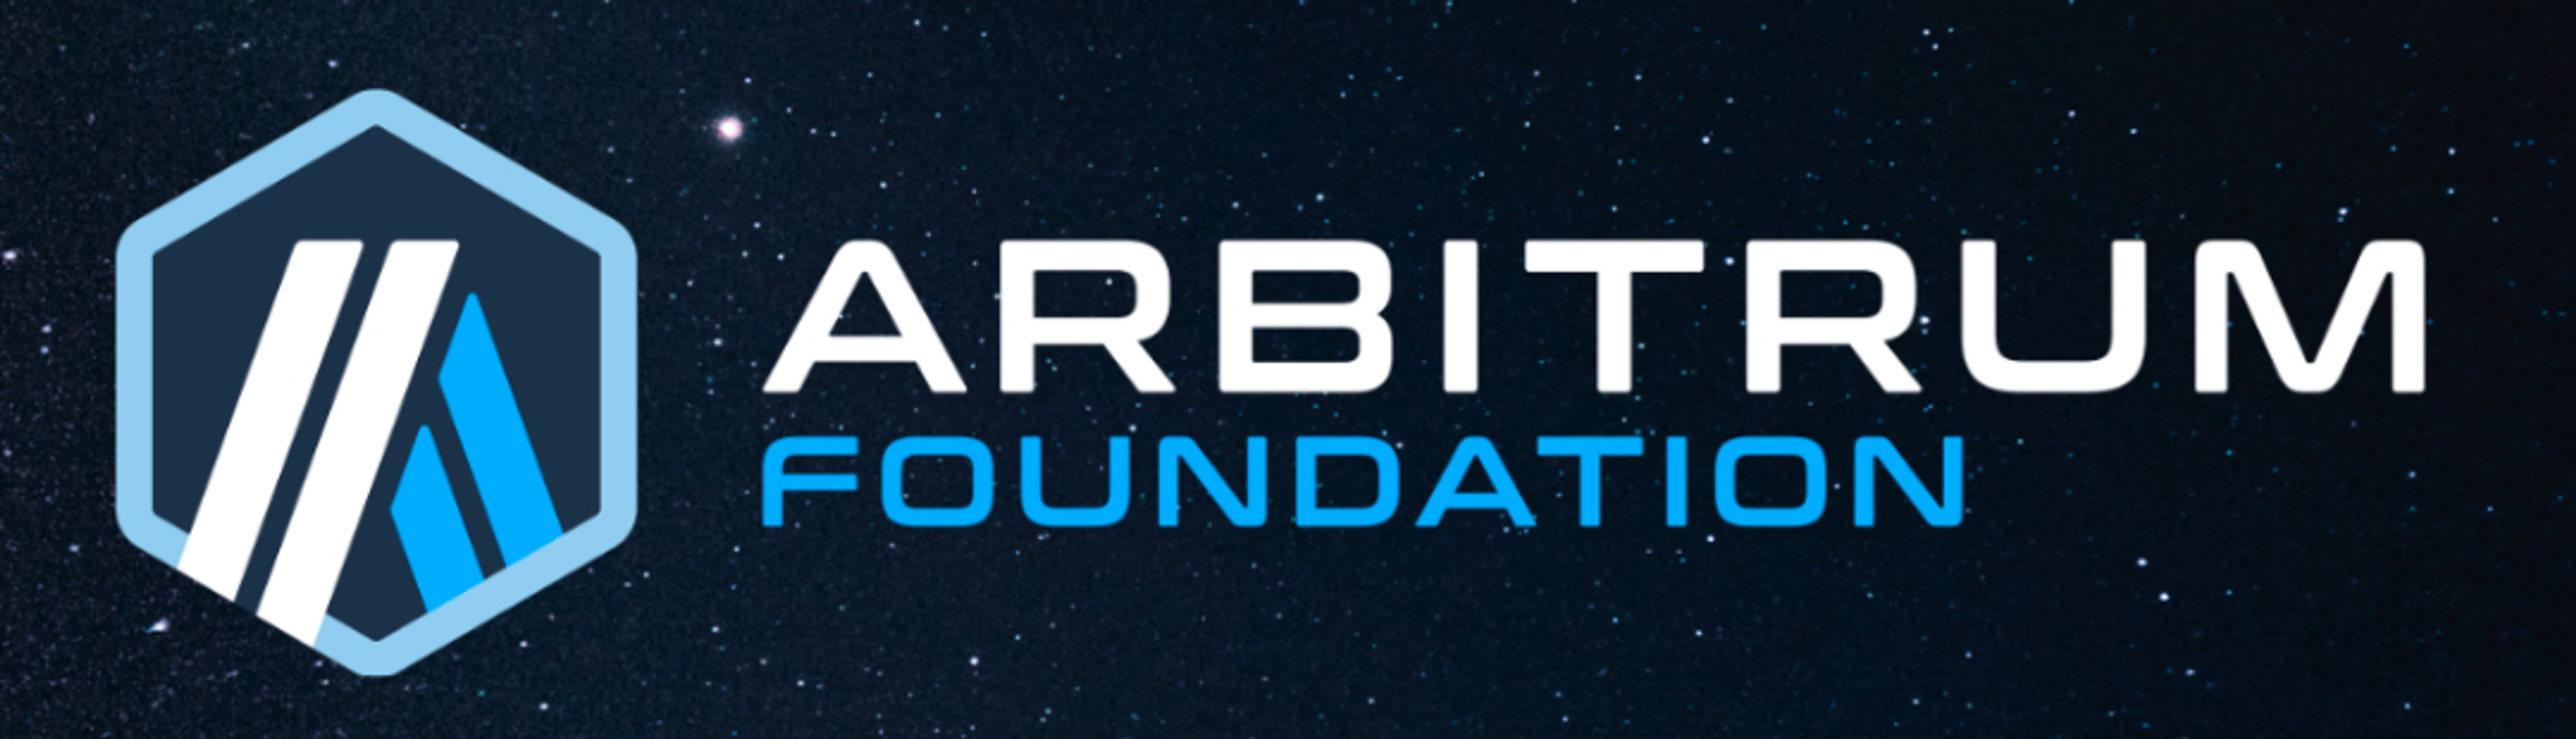 Arbitrum Foundation 